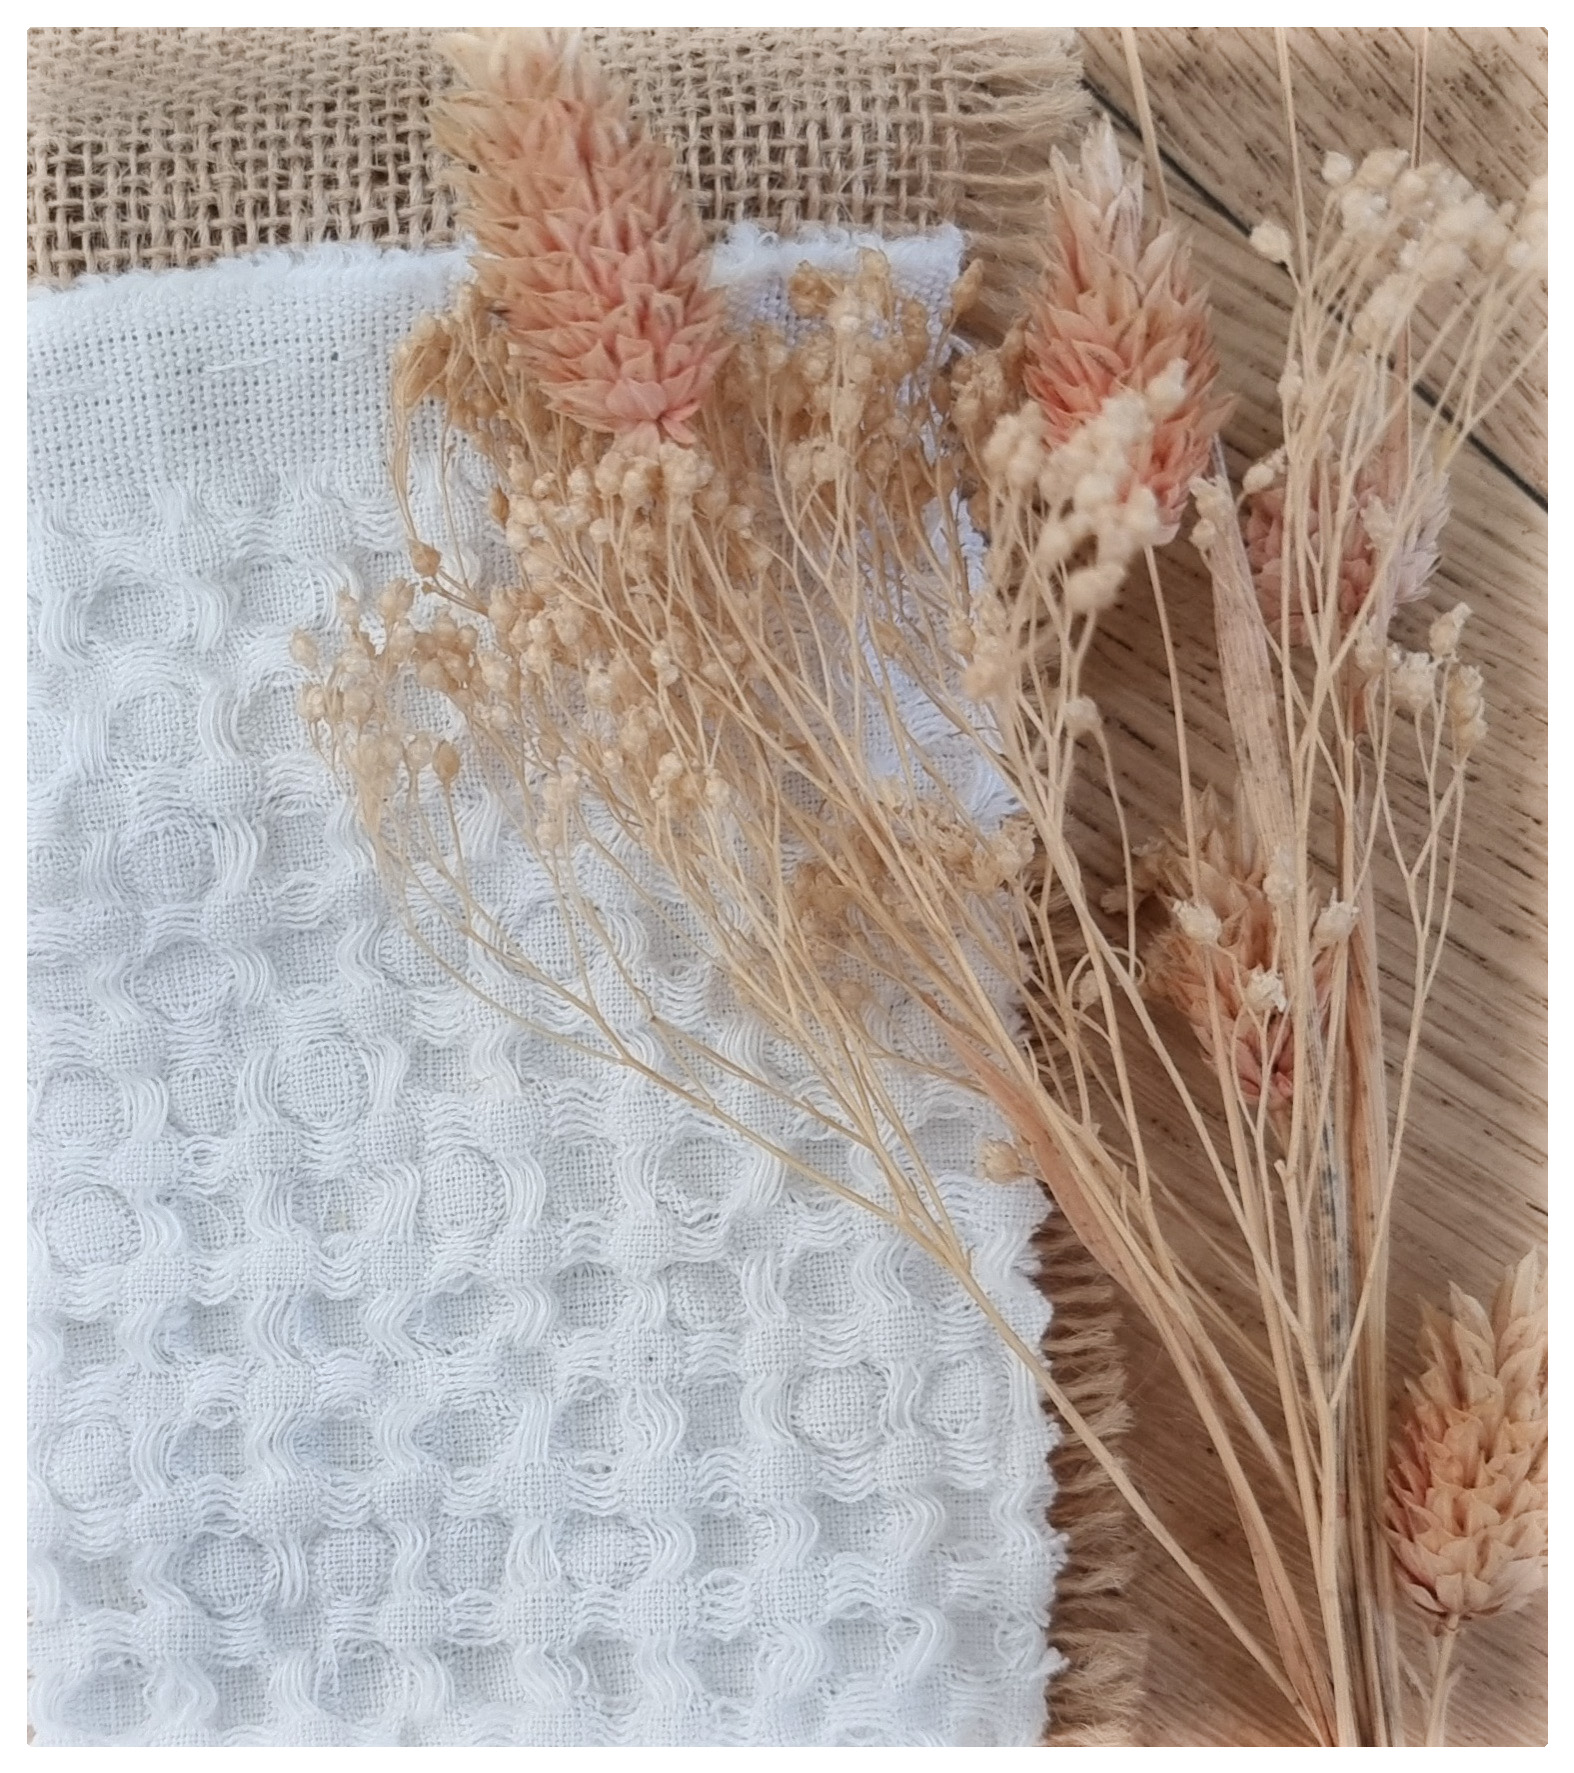 1. tissus gaufré lin-coton blanc - coton bio - matiere naturelle - peau bebe - hypoallergenique - naturel - bebe - ptite bulle - ptite